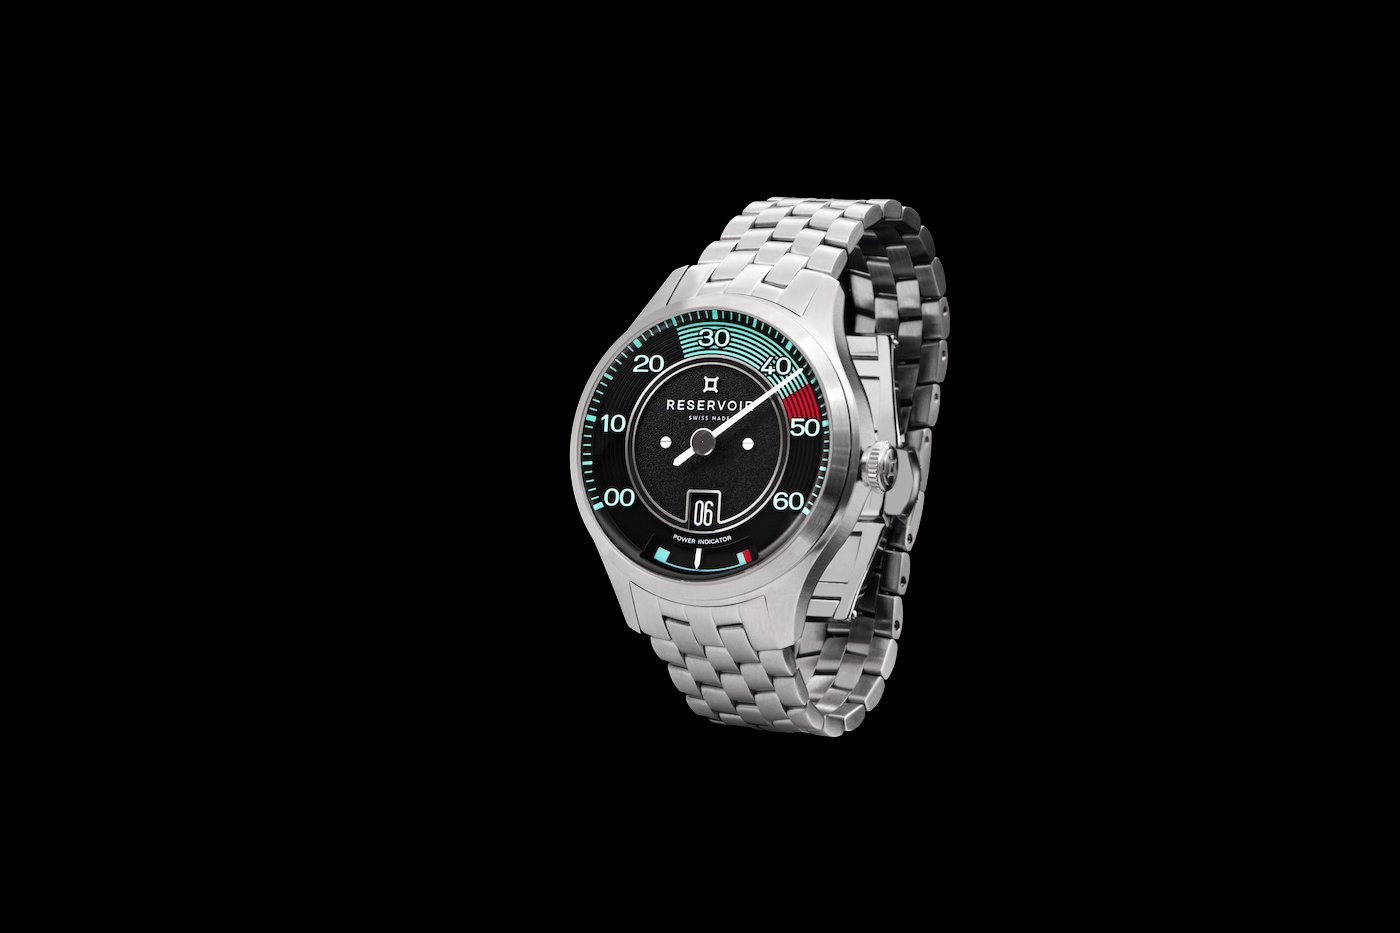 New Reservoir Kanister 316 watch